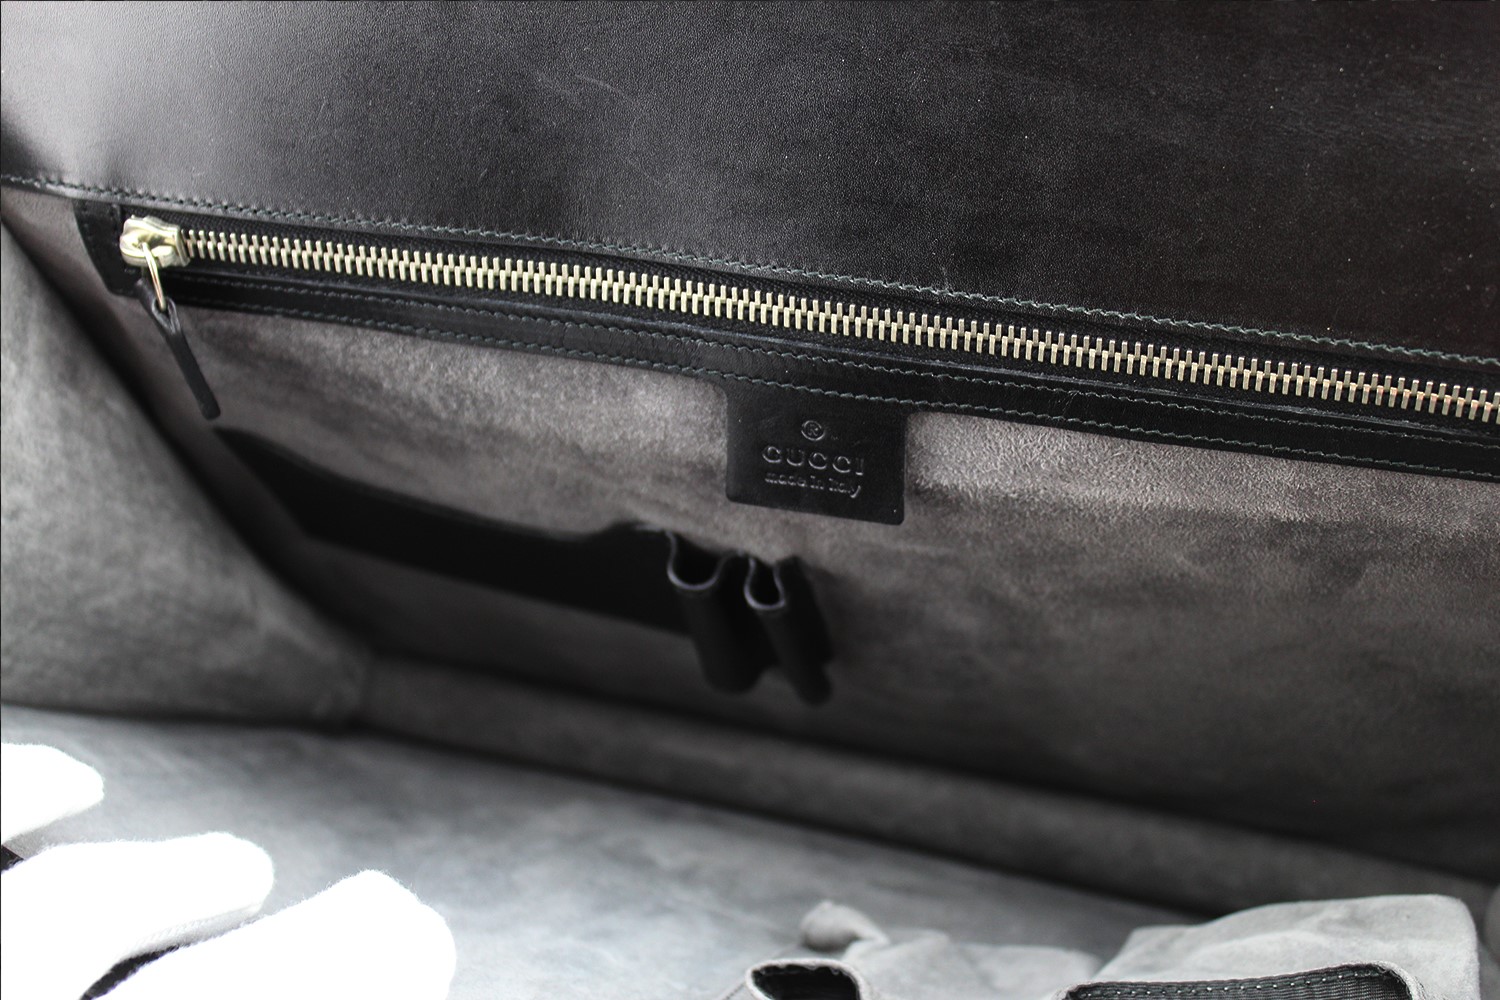 Porte-documents Gucci Authentique d'occasion en cuir couleur noir, bijouterie argentée. Modèle 2018